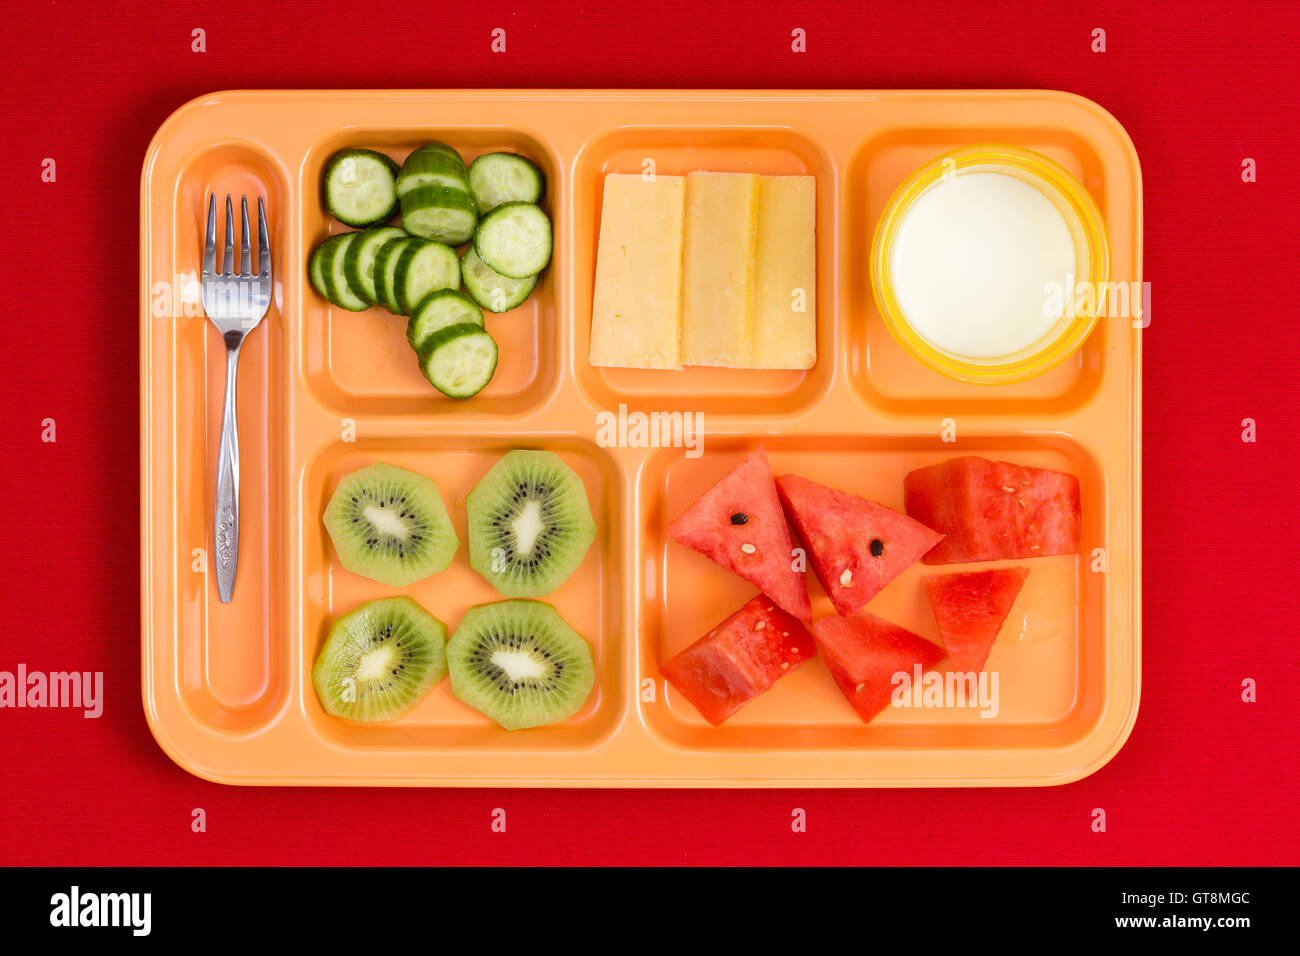 Vue perspective du haut vers le bas sur la taille de l'enfant en plastique lumineux déjeuner plateau avec fourche, concombre, fromage, kiwi, pastèque et tranches littl Banque D'Images